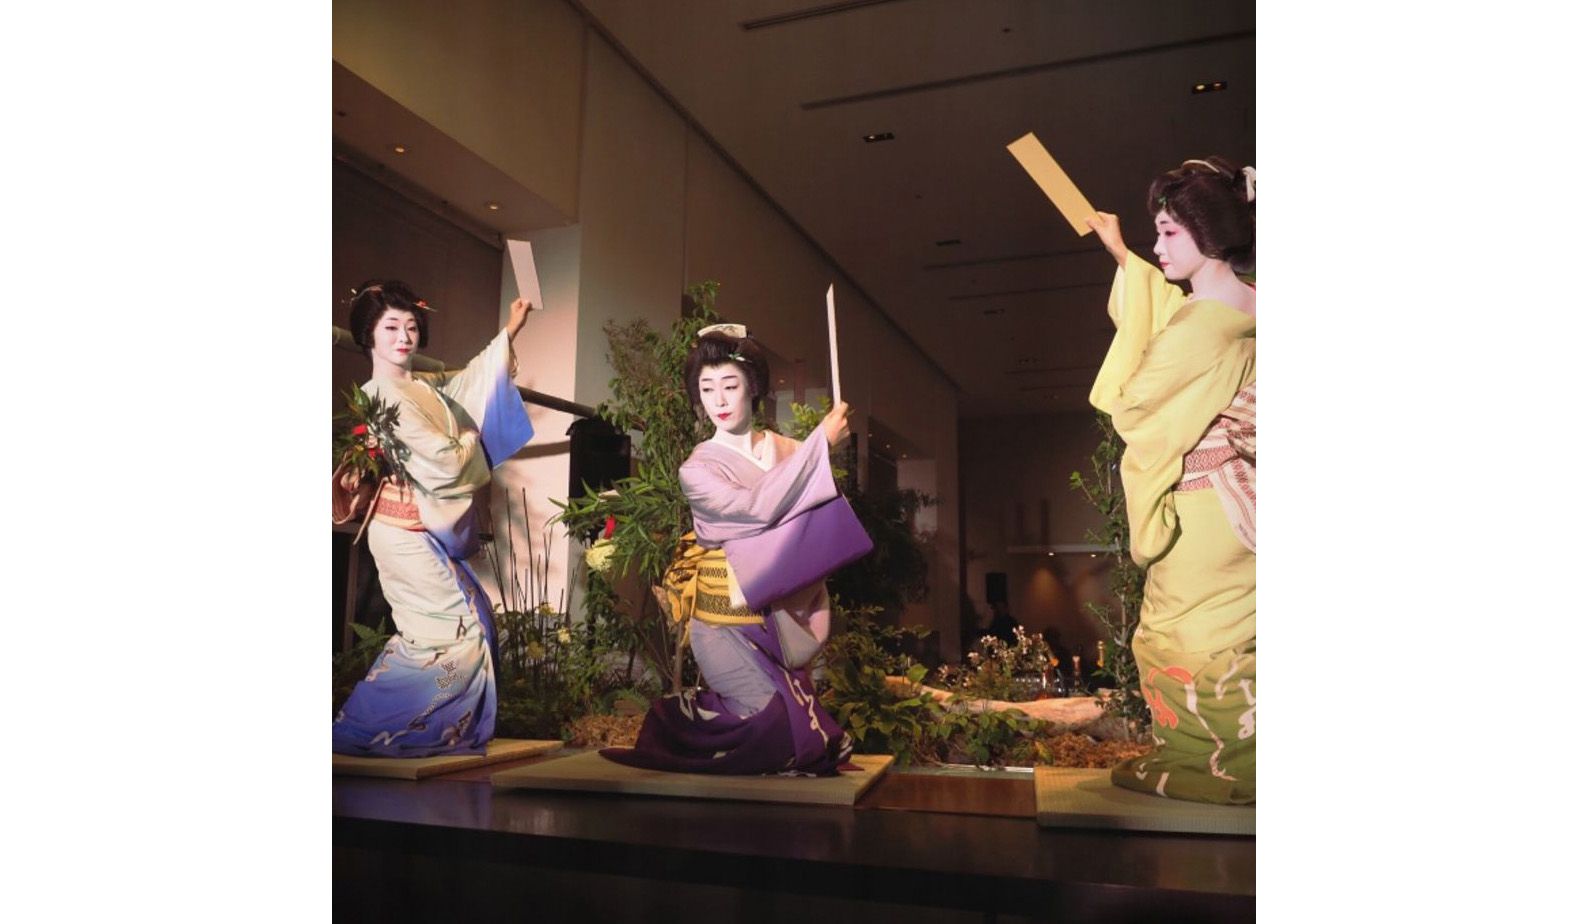 赤坂の芸者衆による踊りの様子